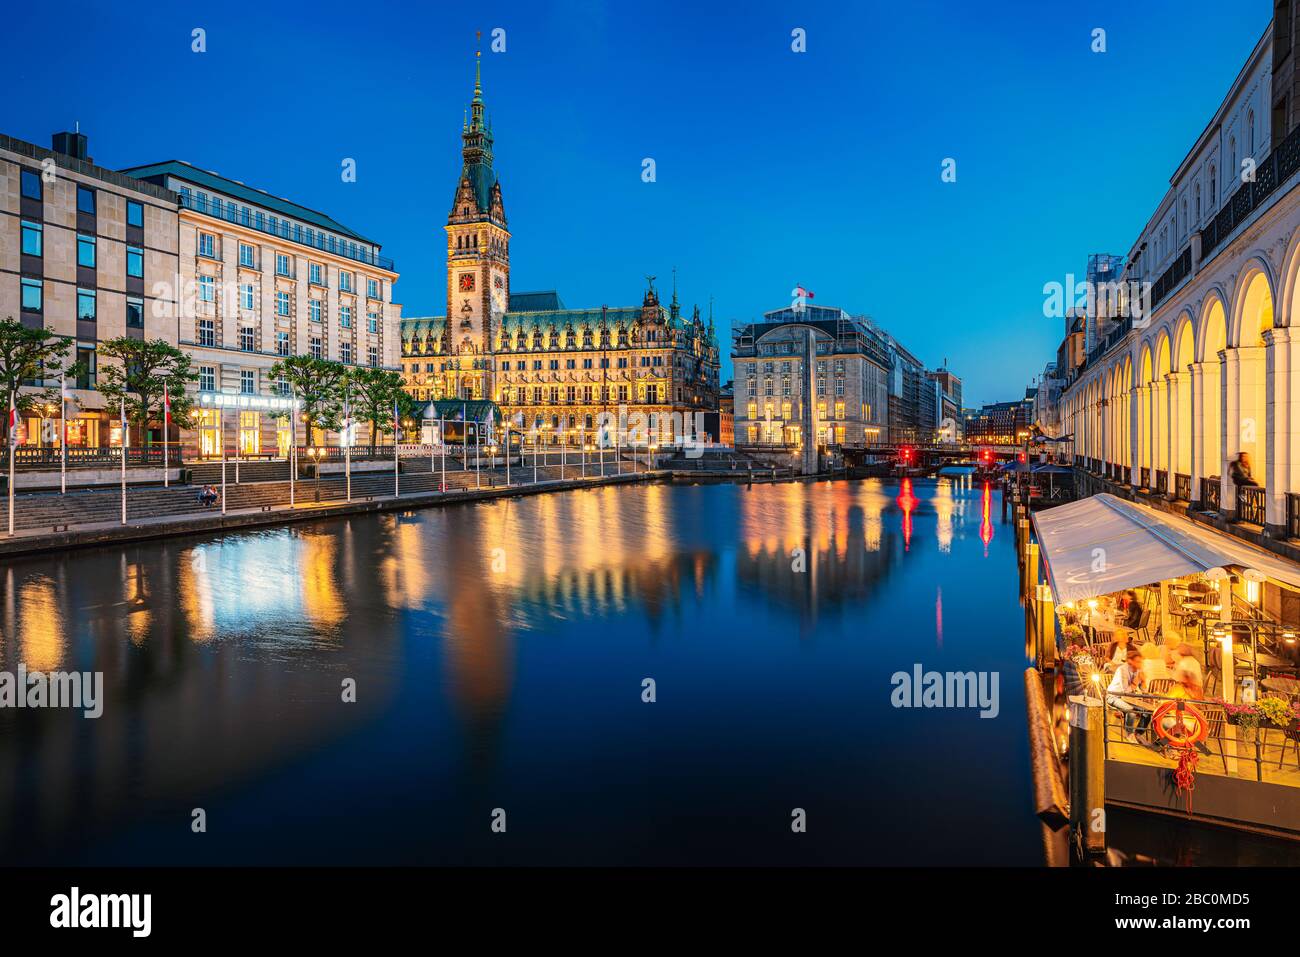 Hamburg skyline with city hall at twilight, Germany Stock Photo